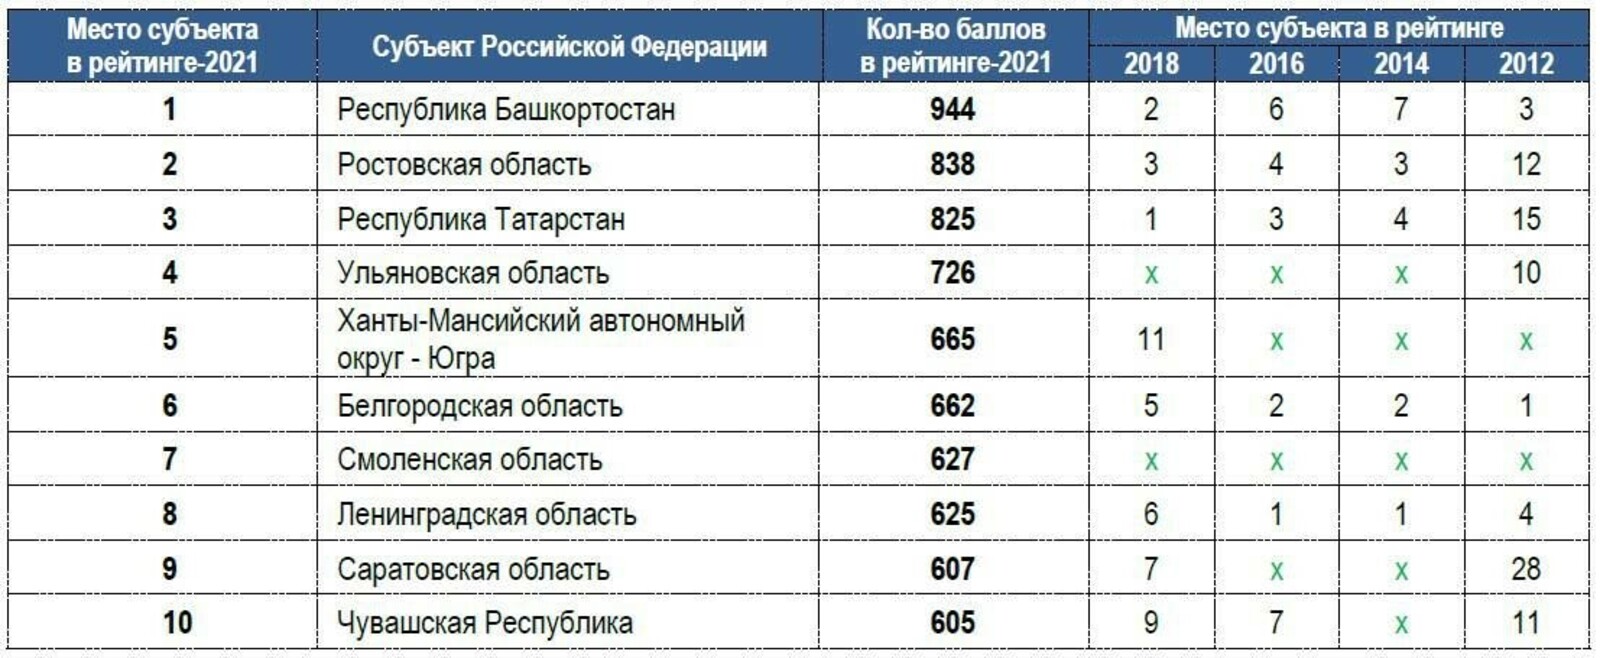 Башкортостан – первый в рейтинге субъектов Российской Федерации по уровню защищенности потребителей.